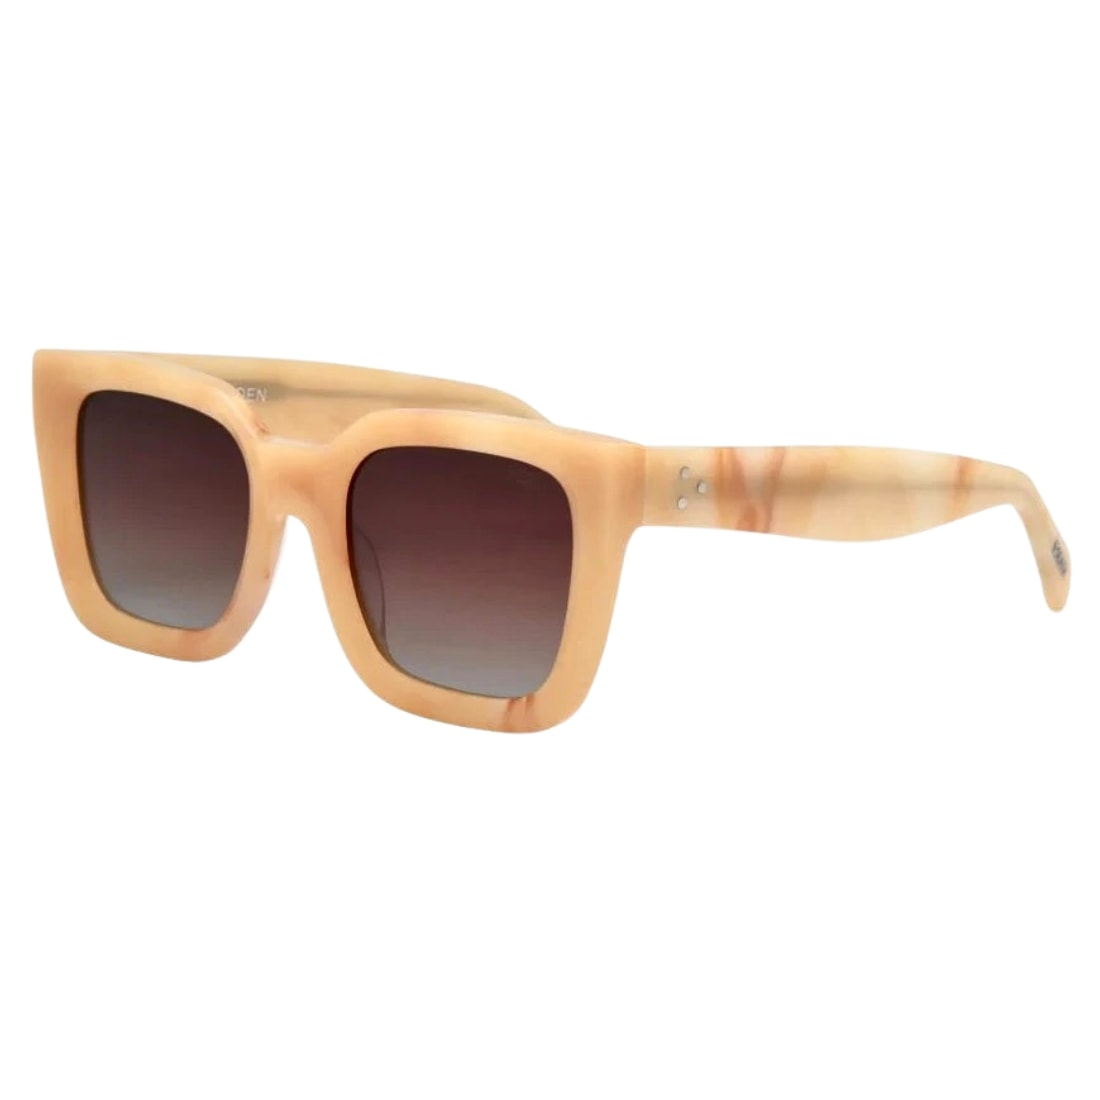 I-Sea Alden Sunglasses - Dolce De Leche/Tan Gradient Polarised